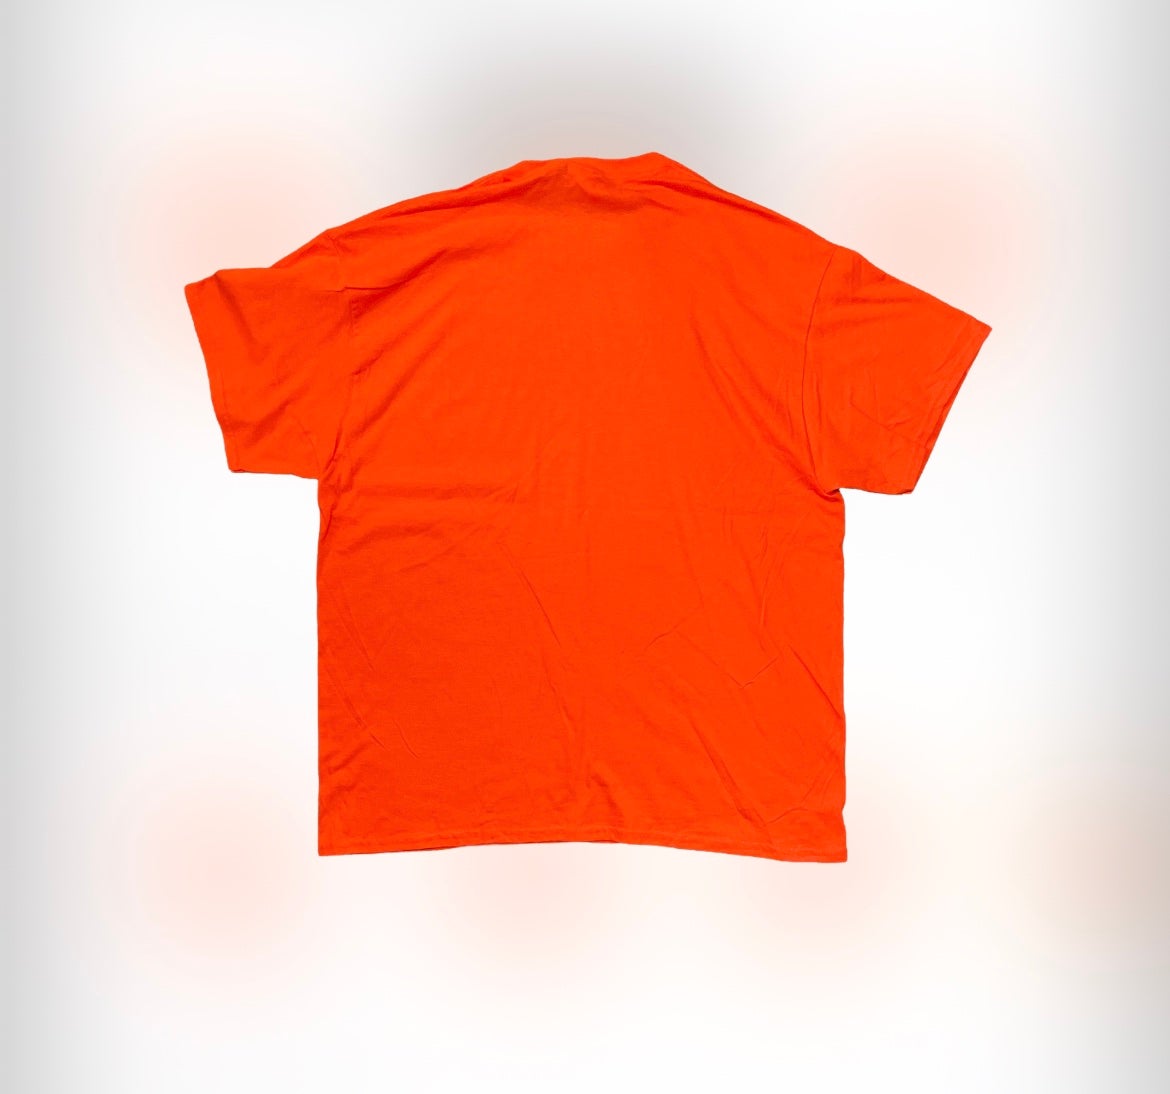 Giveaway – Win a 1961 Hawaiian Islanders XL T-shirt!